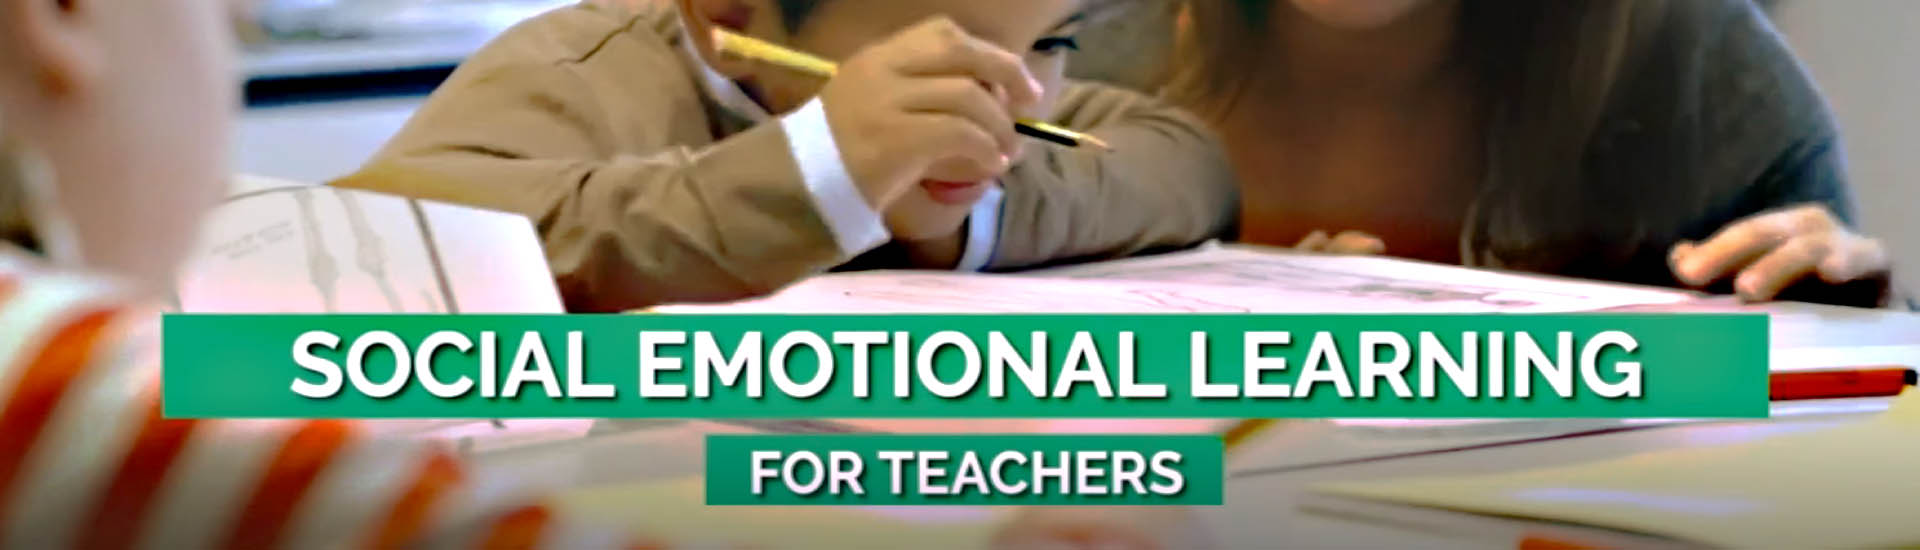 Social-Emotional Learning (SEL) for Teachers